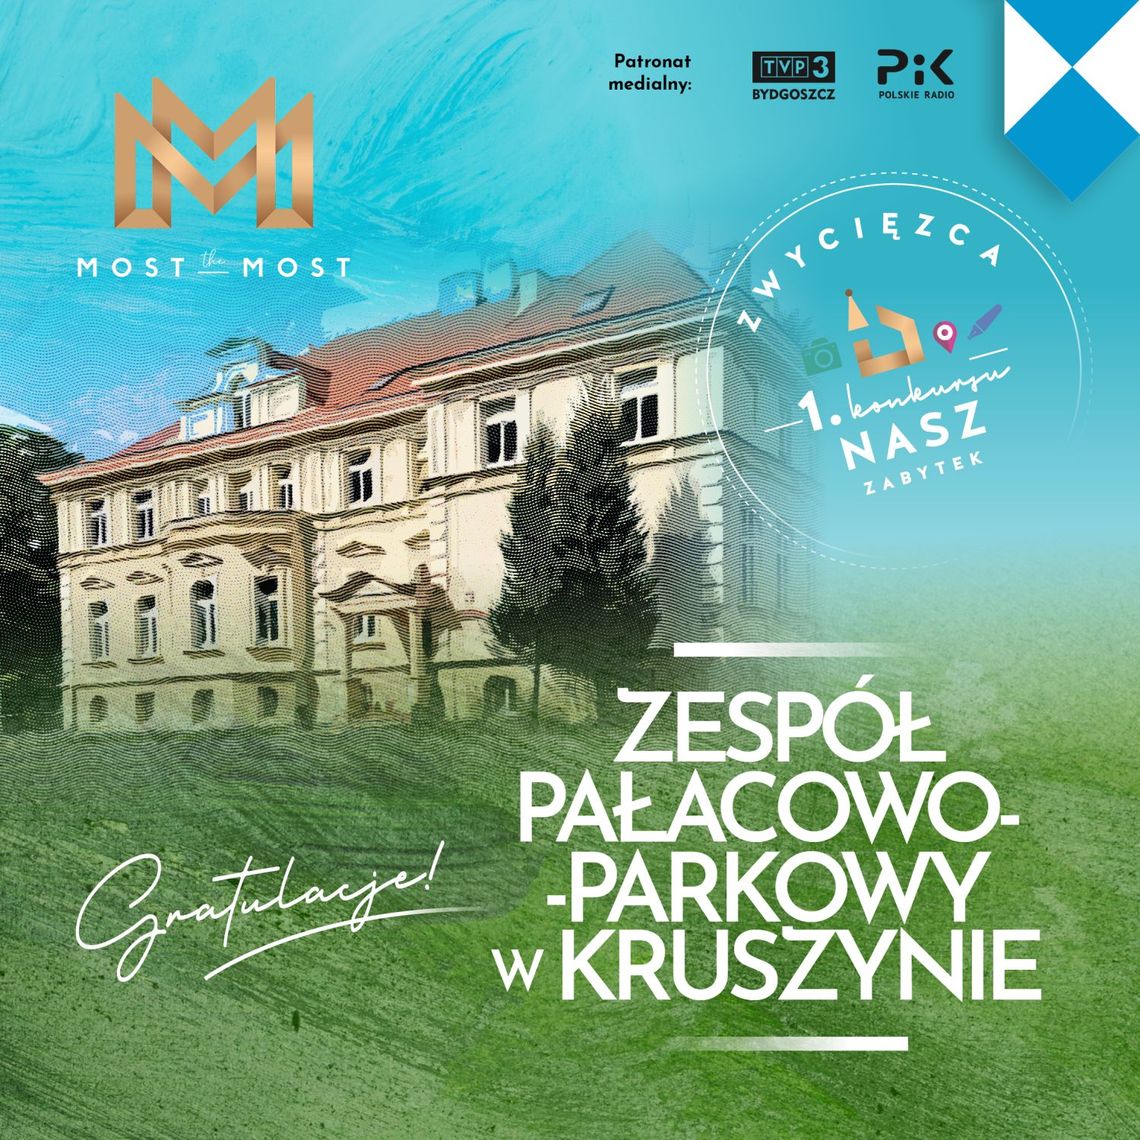 Zespół pałacowo-parkowy w Kruszynie zwycięzcą I Konkursu Nasz Zabytek Fundacji Most the Most w Kujawsko-Pomorskiem  